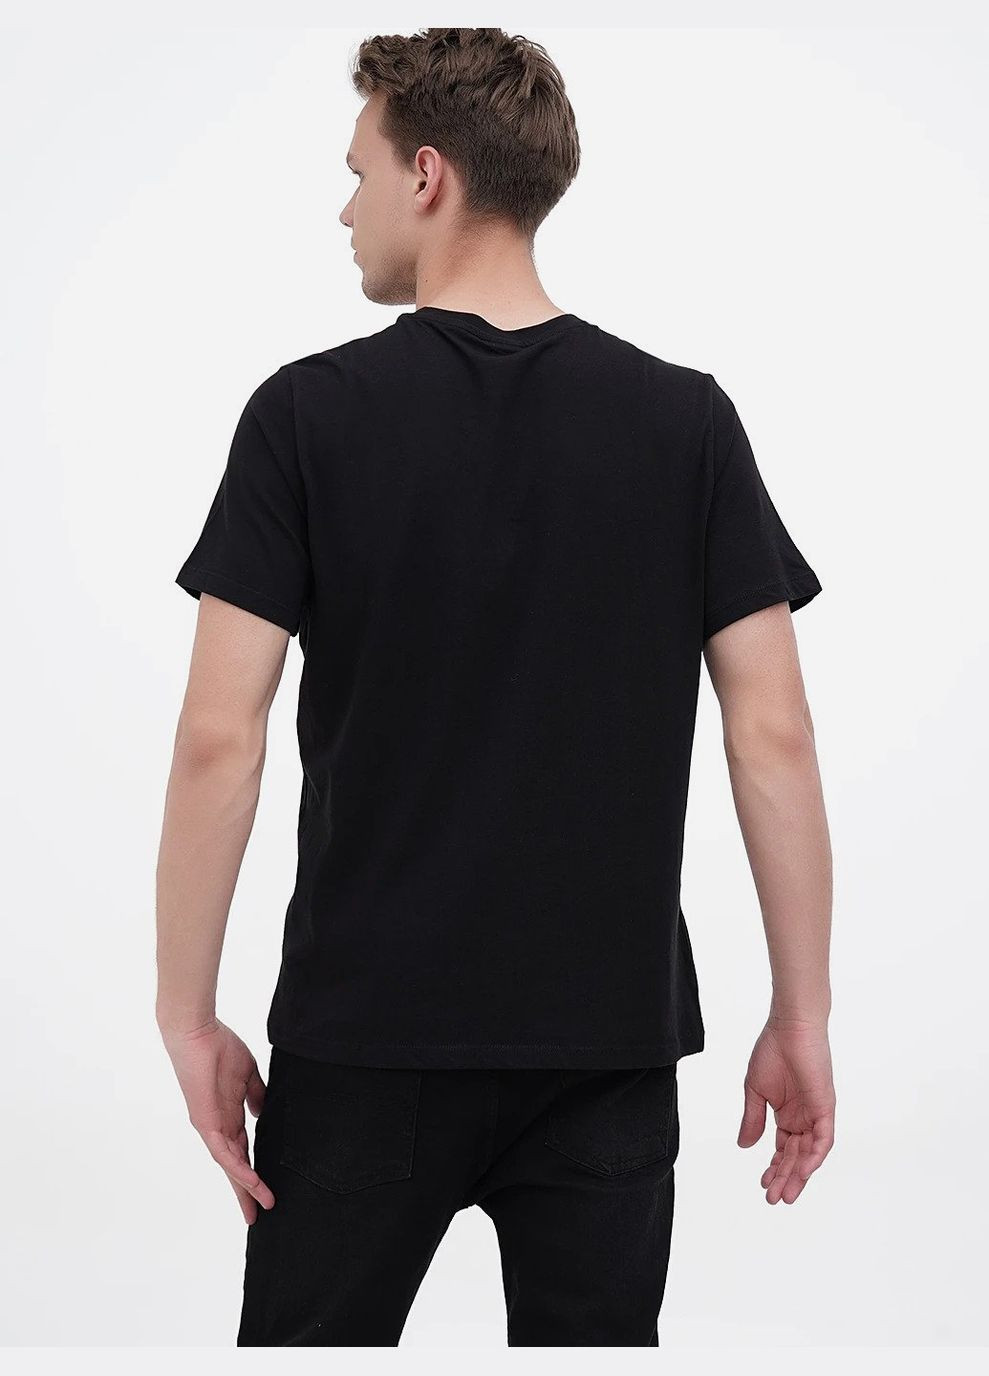 Чорна футболка бавовняна трикотажна для чоловіка 1036336 чорний H&M